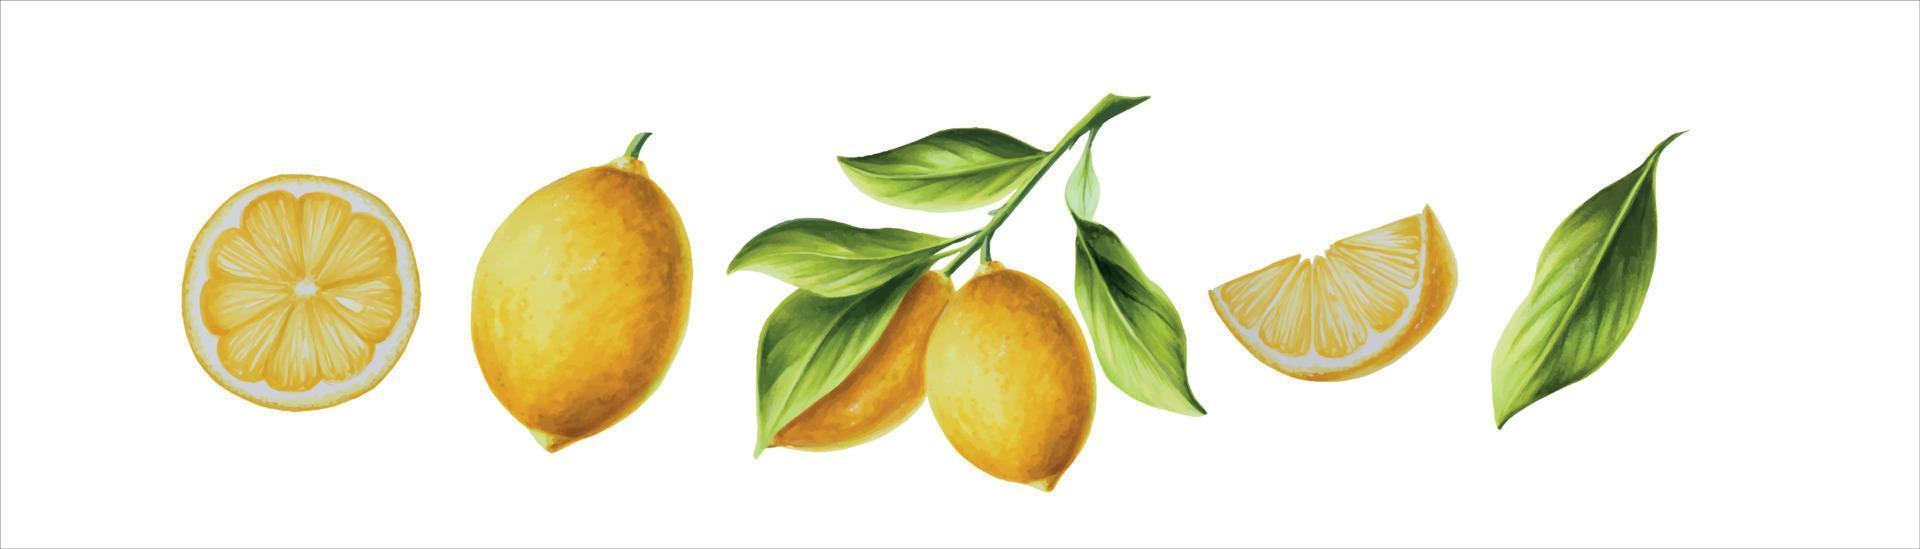 waterverf banier met vers rijp citroen met helder groen bladeren en bloemen. hand- getrokken besnoeiing citrus plakjes schilderij Aan wit achtergrond vector